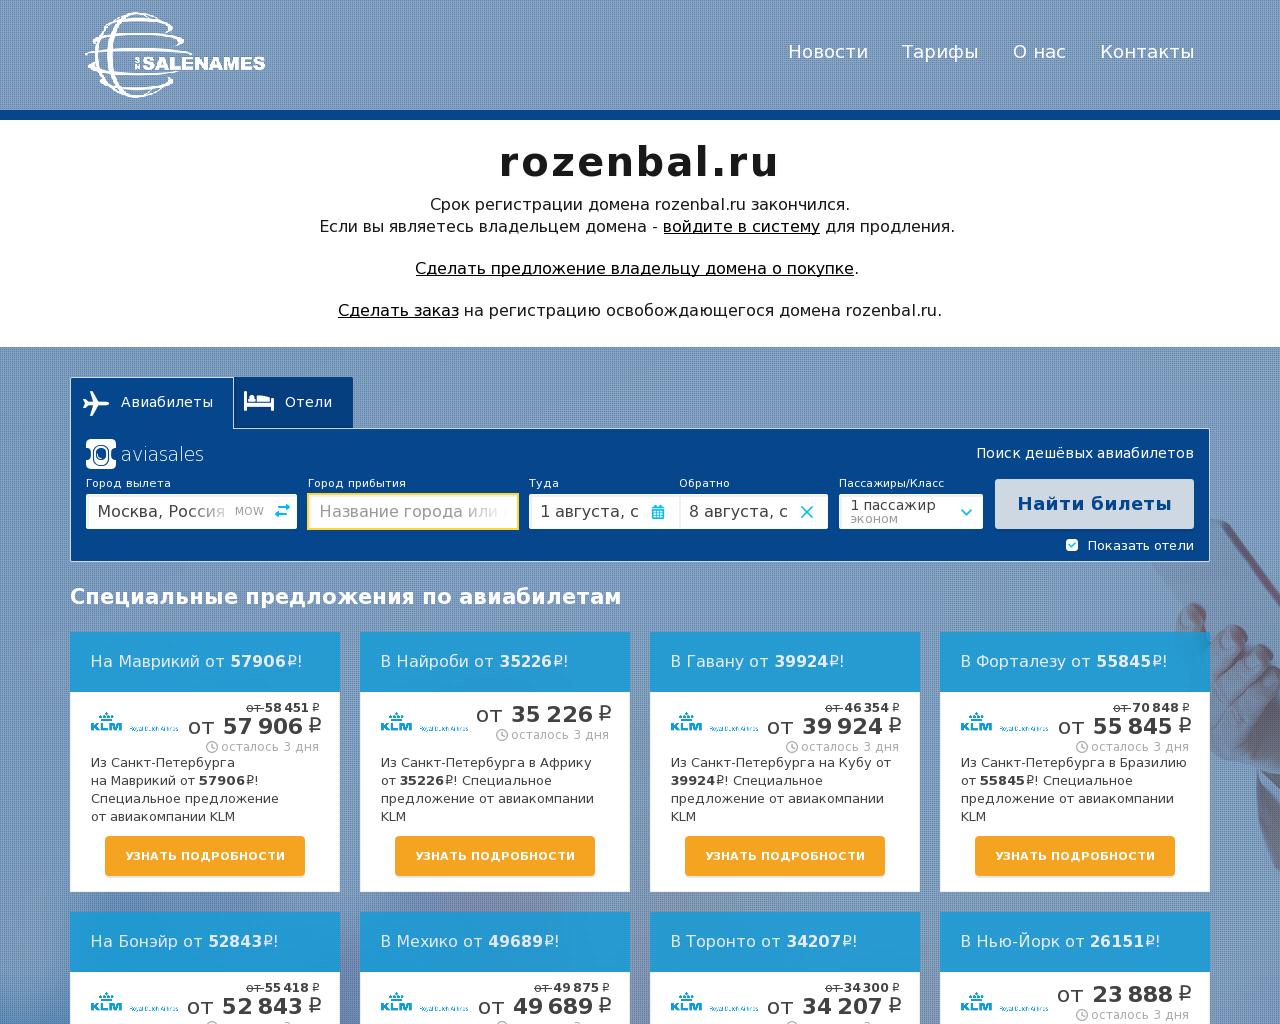 Изображение сайта rozenbal.ru в разрешении 1280x1024